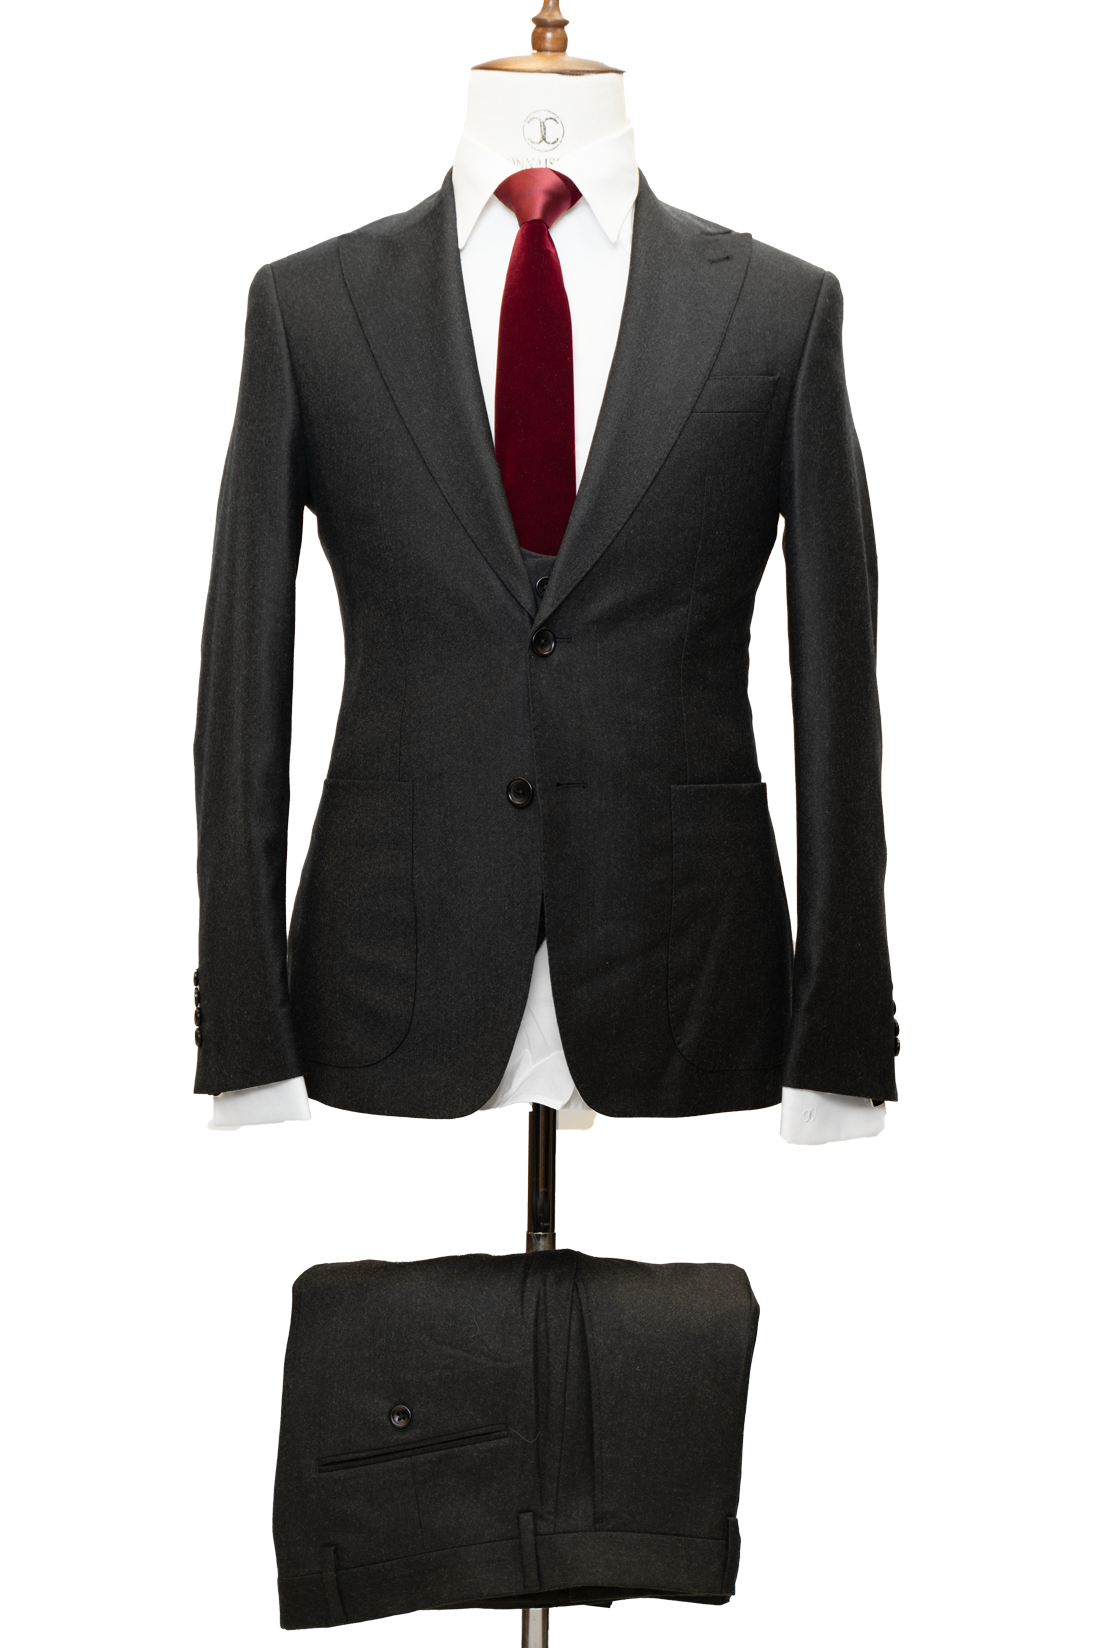 Zignone - Black Cashmere 3-Piece Fit Slim Fit Suit with Patch Pockets